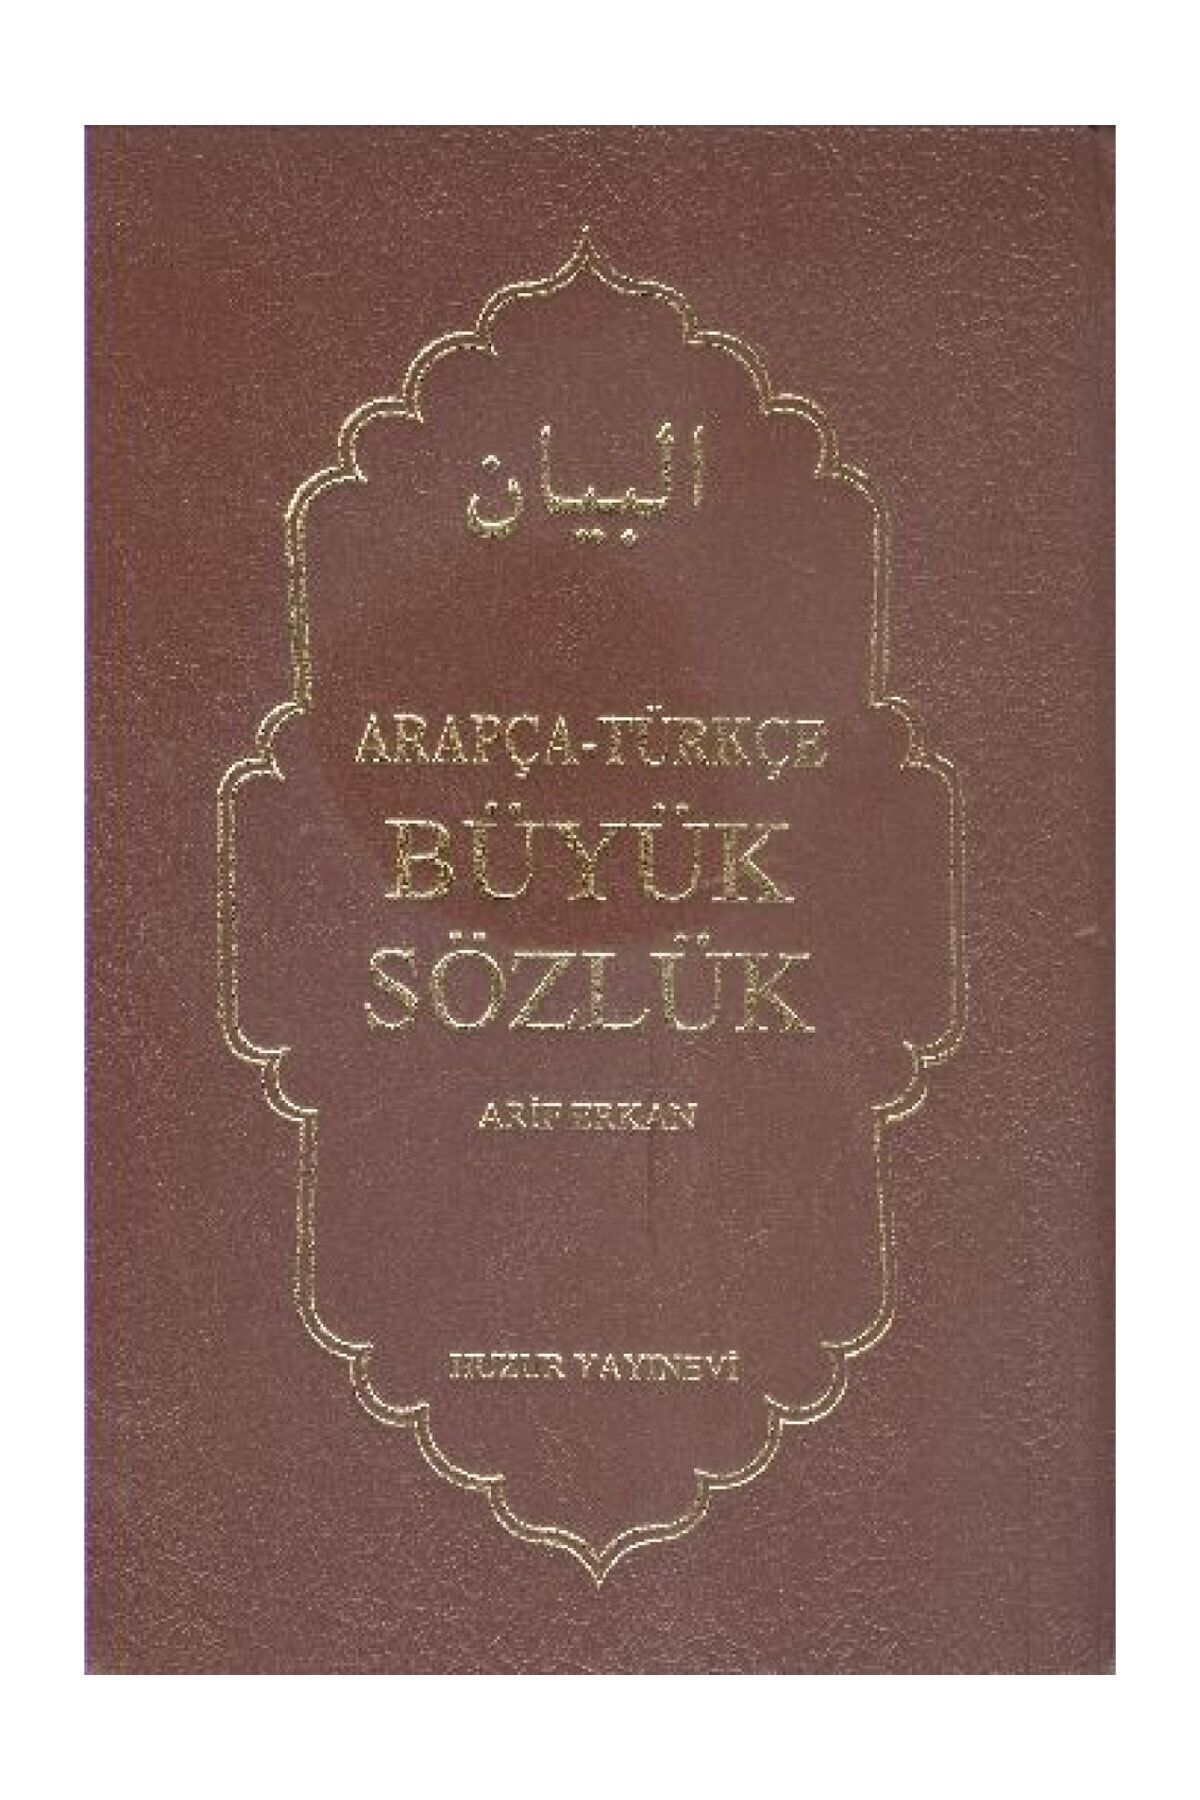 Huzur Yayınevi Arapça-Türkçe Büyük Sözlük  Arif Erkan